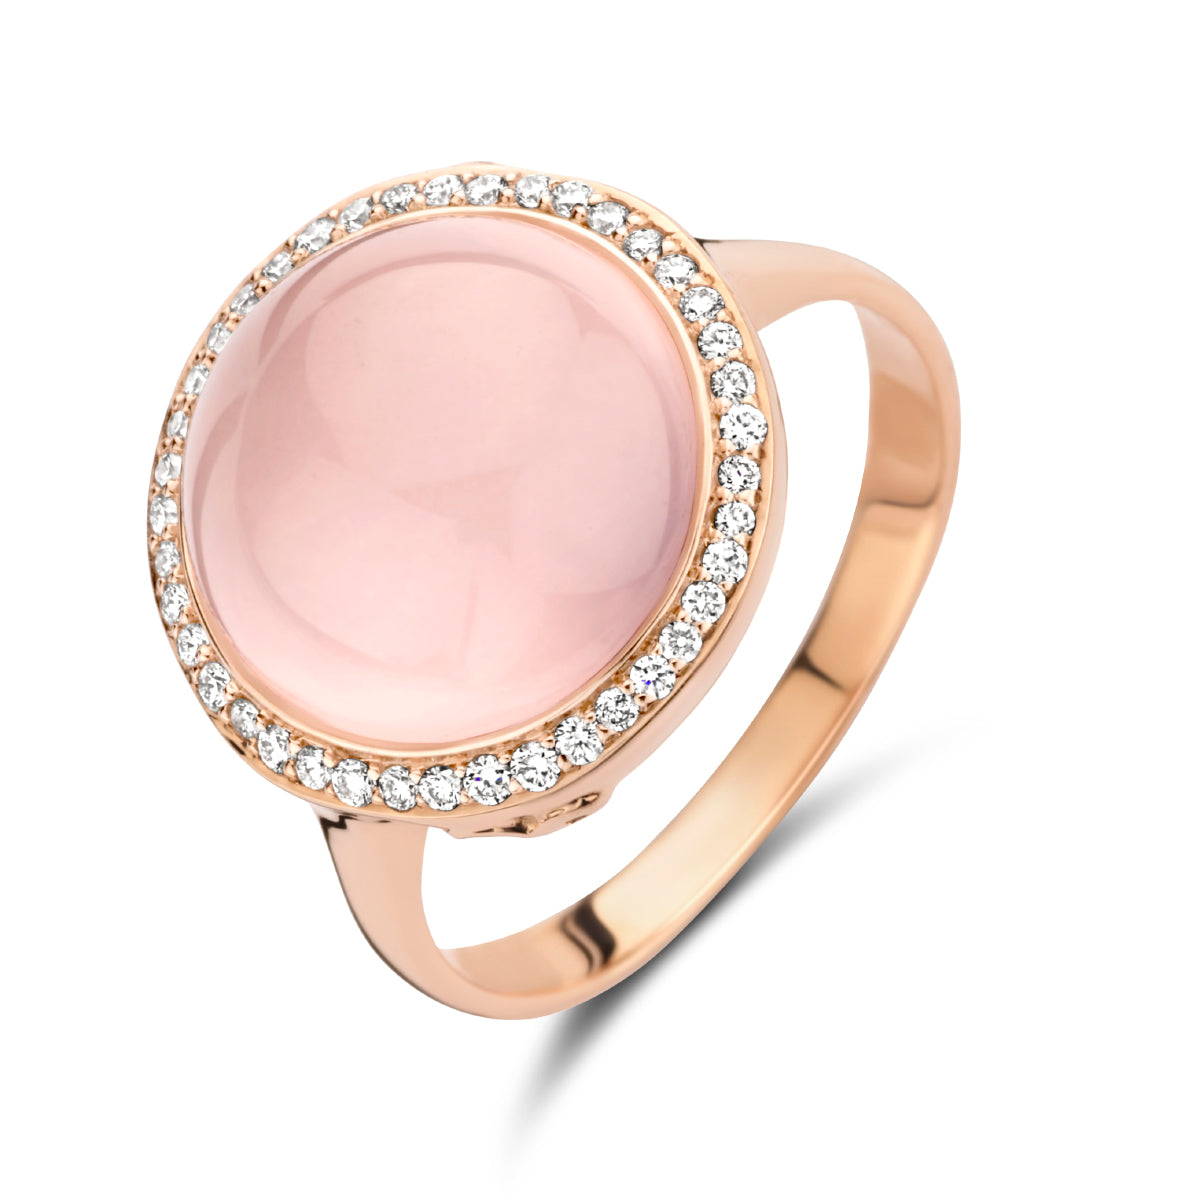 Voordracht het dossier Verenigde Staten van Amerika Rosé gouden ring met rozenkwarts en diamant 44.01428 – Mignon Juwelier &  Goudsmeden